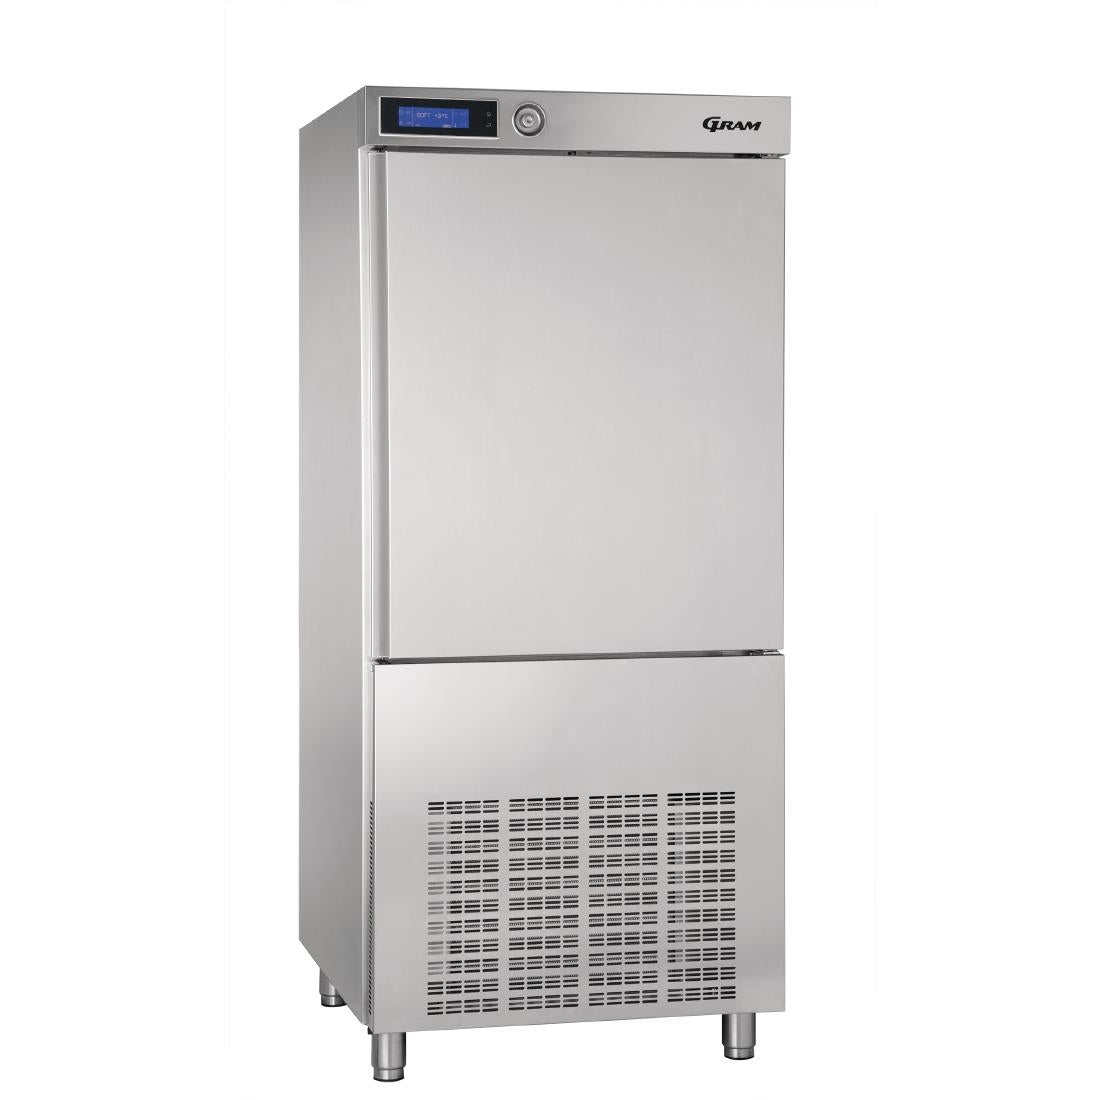 DA123 Gram 45kg/27kg Blast Chiller/Freezer KPS 42 SH JD Catering Equipment Solutions Ltd